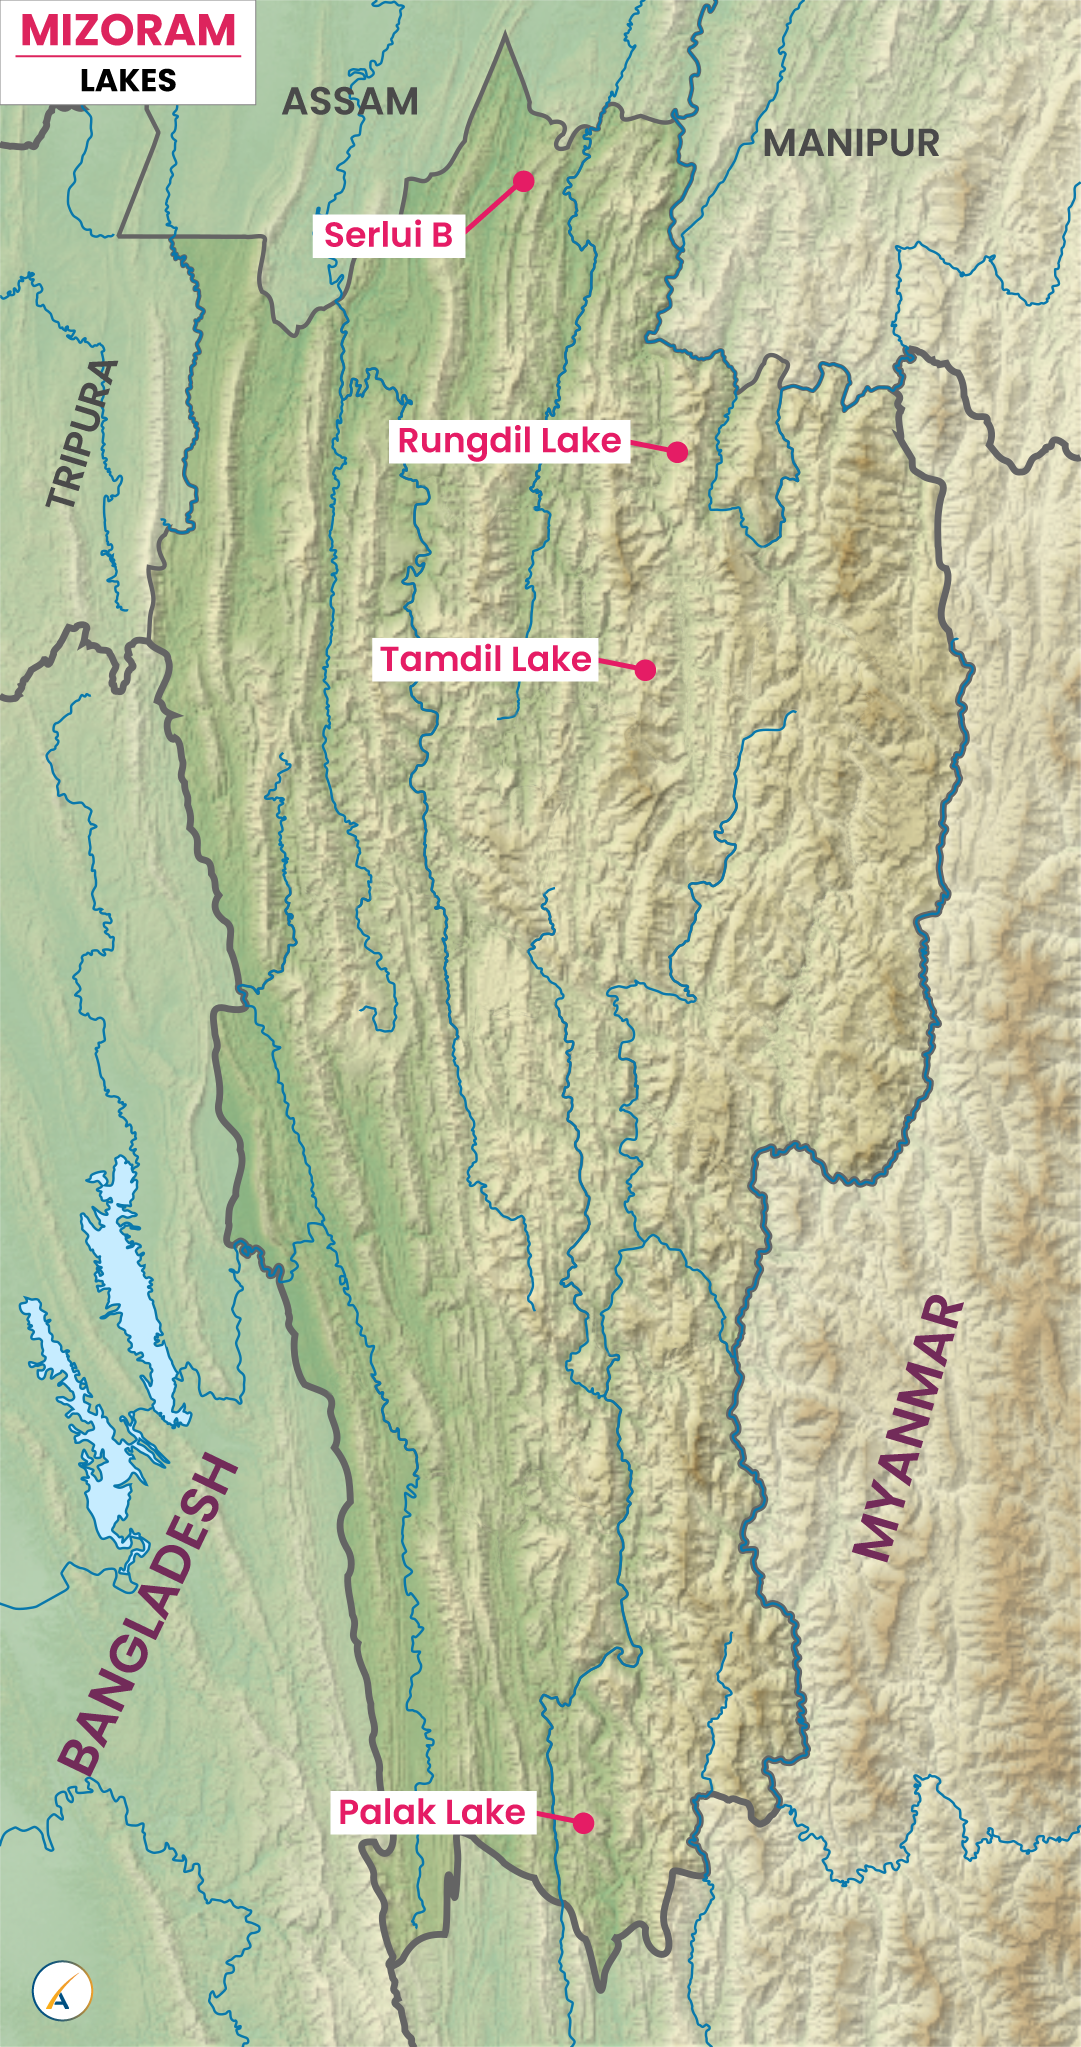 Lakes in Mizoram